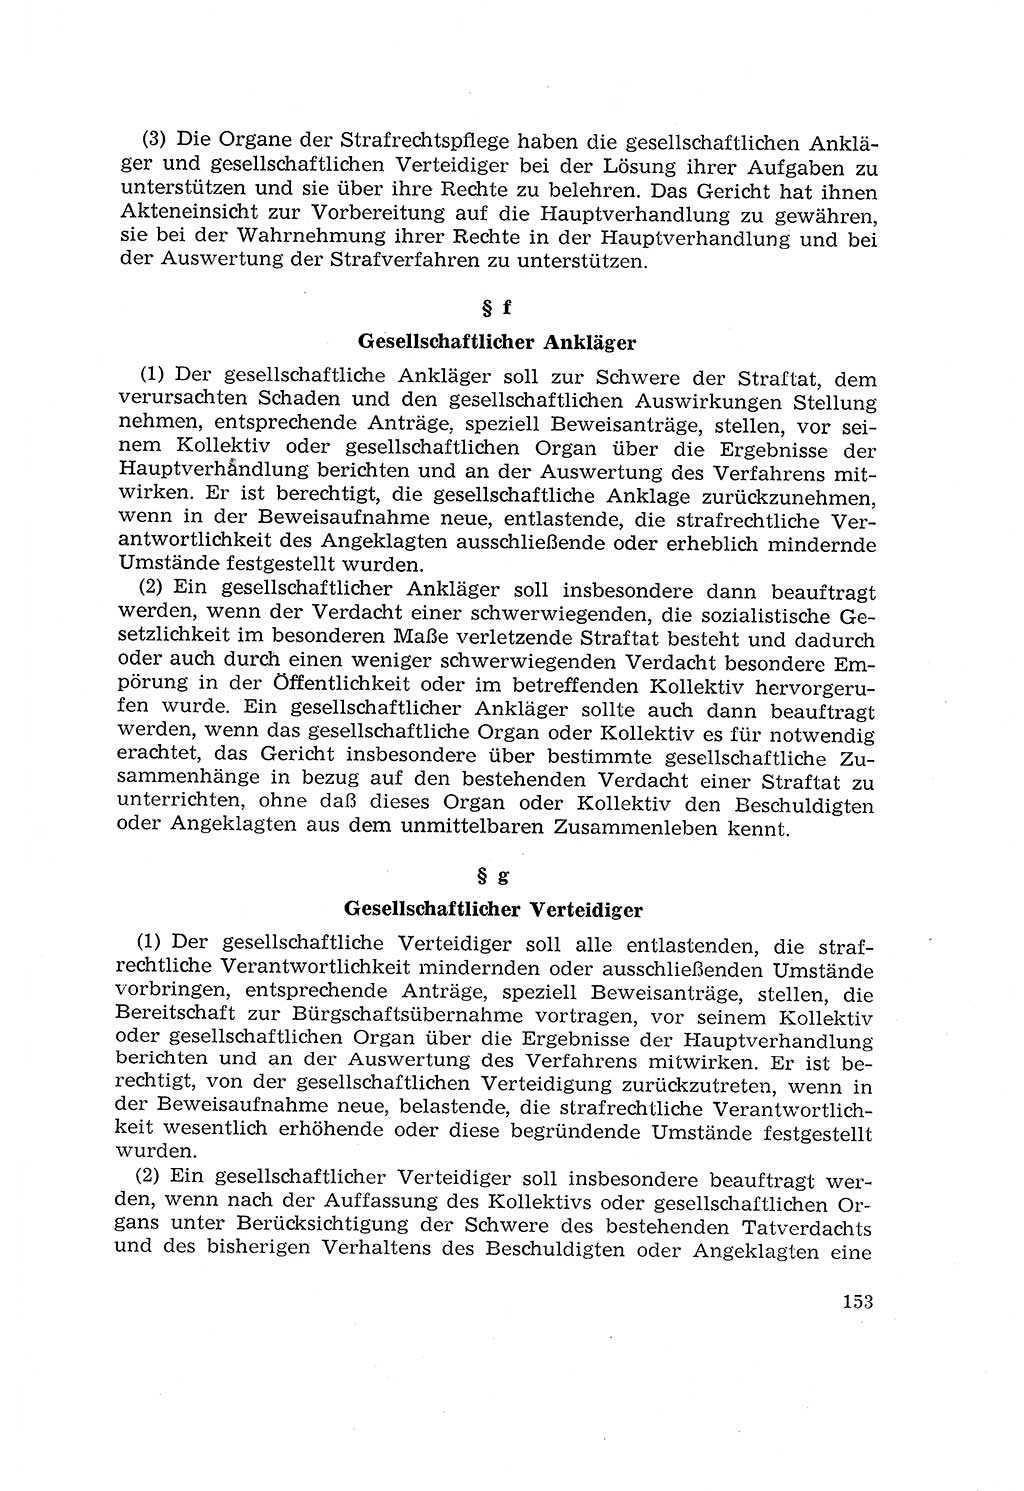 Die Mitwirkung der Werktätigen am Strafverfahren [Deutsche Demokratische Republik (DDR)] 1966, Seite 153 (Mitw. Str.-Verf. DDR 1966, S. 153)